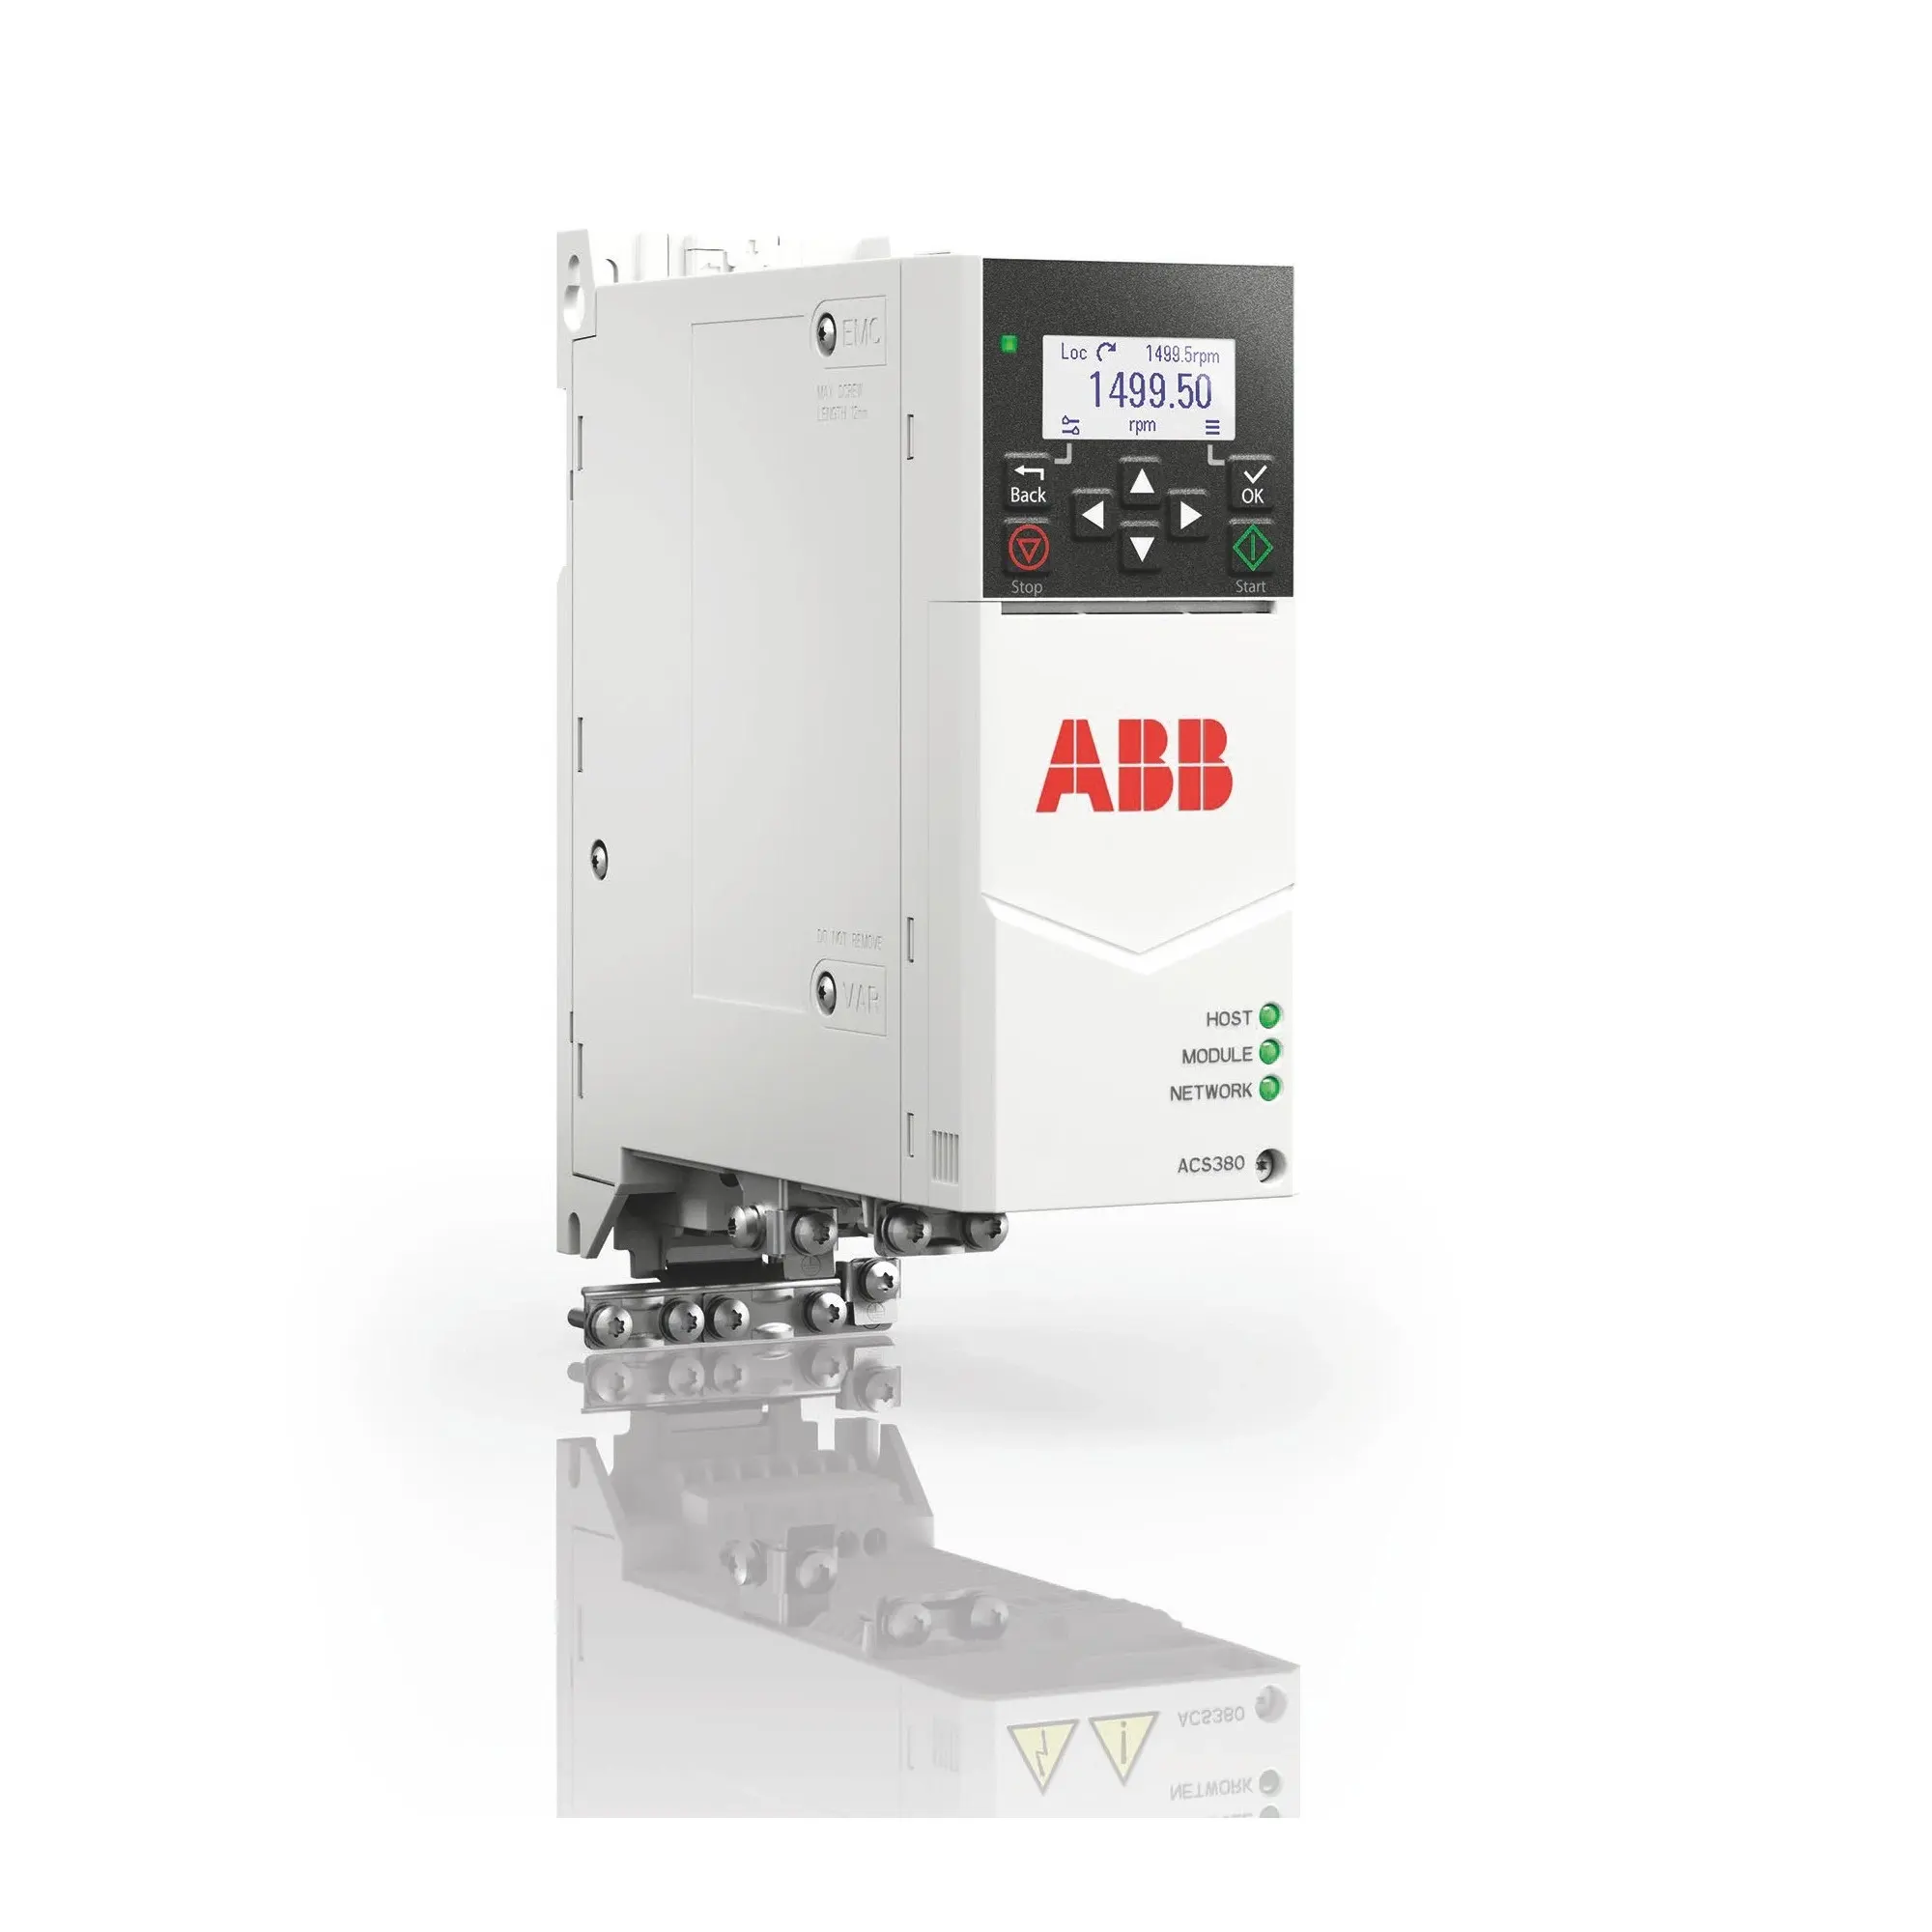 ABB Machinery Drives 4kw Convertidor de frecuencia de 2, 0